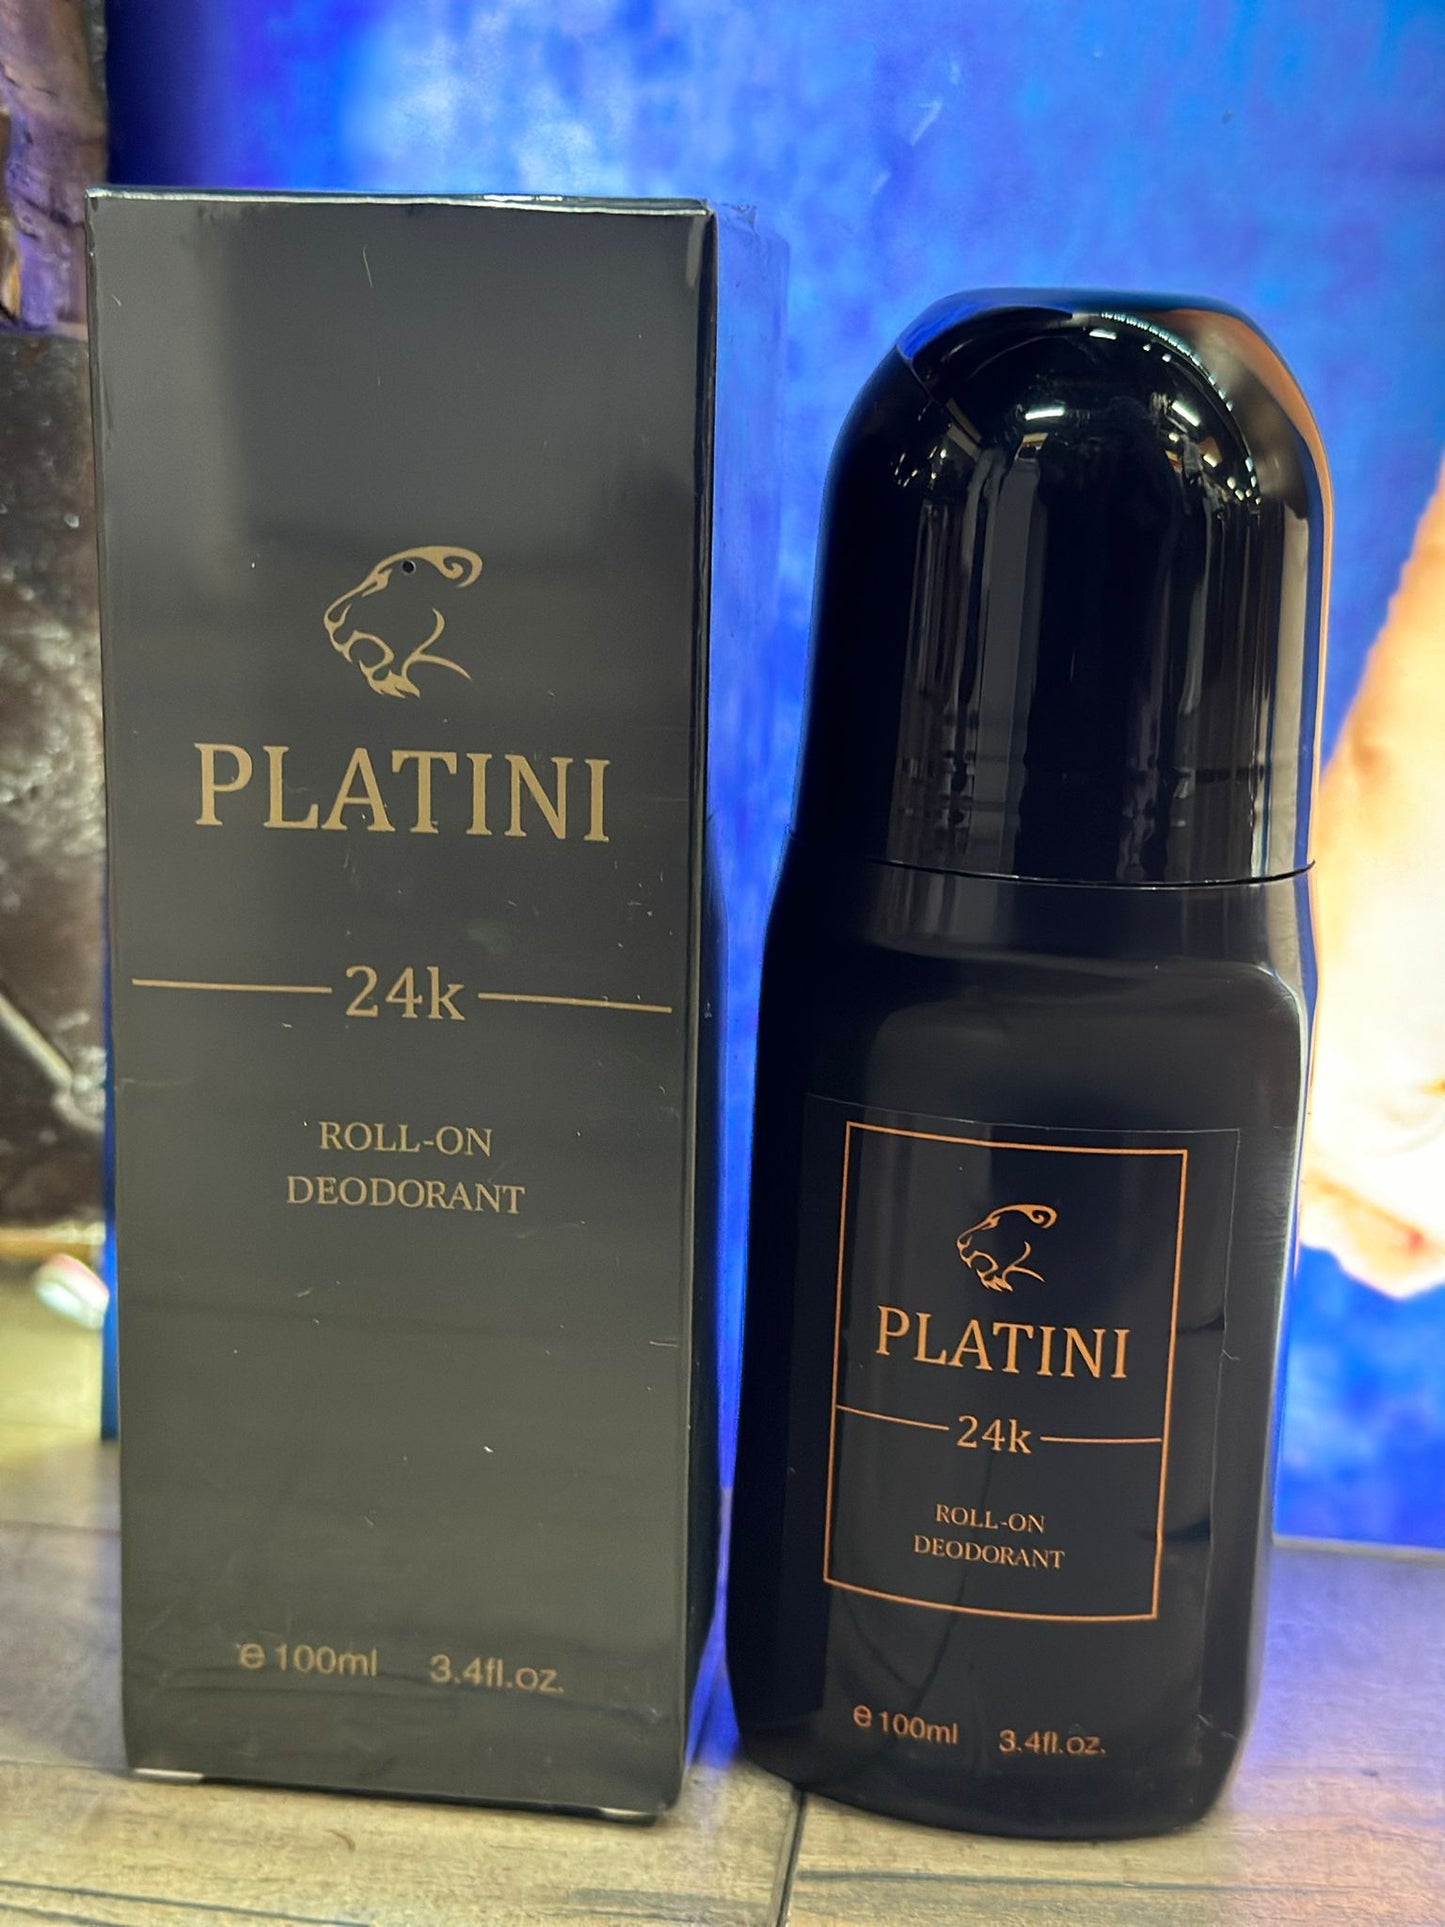 Platini 24k - Deodorant